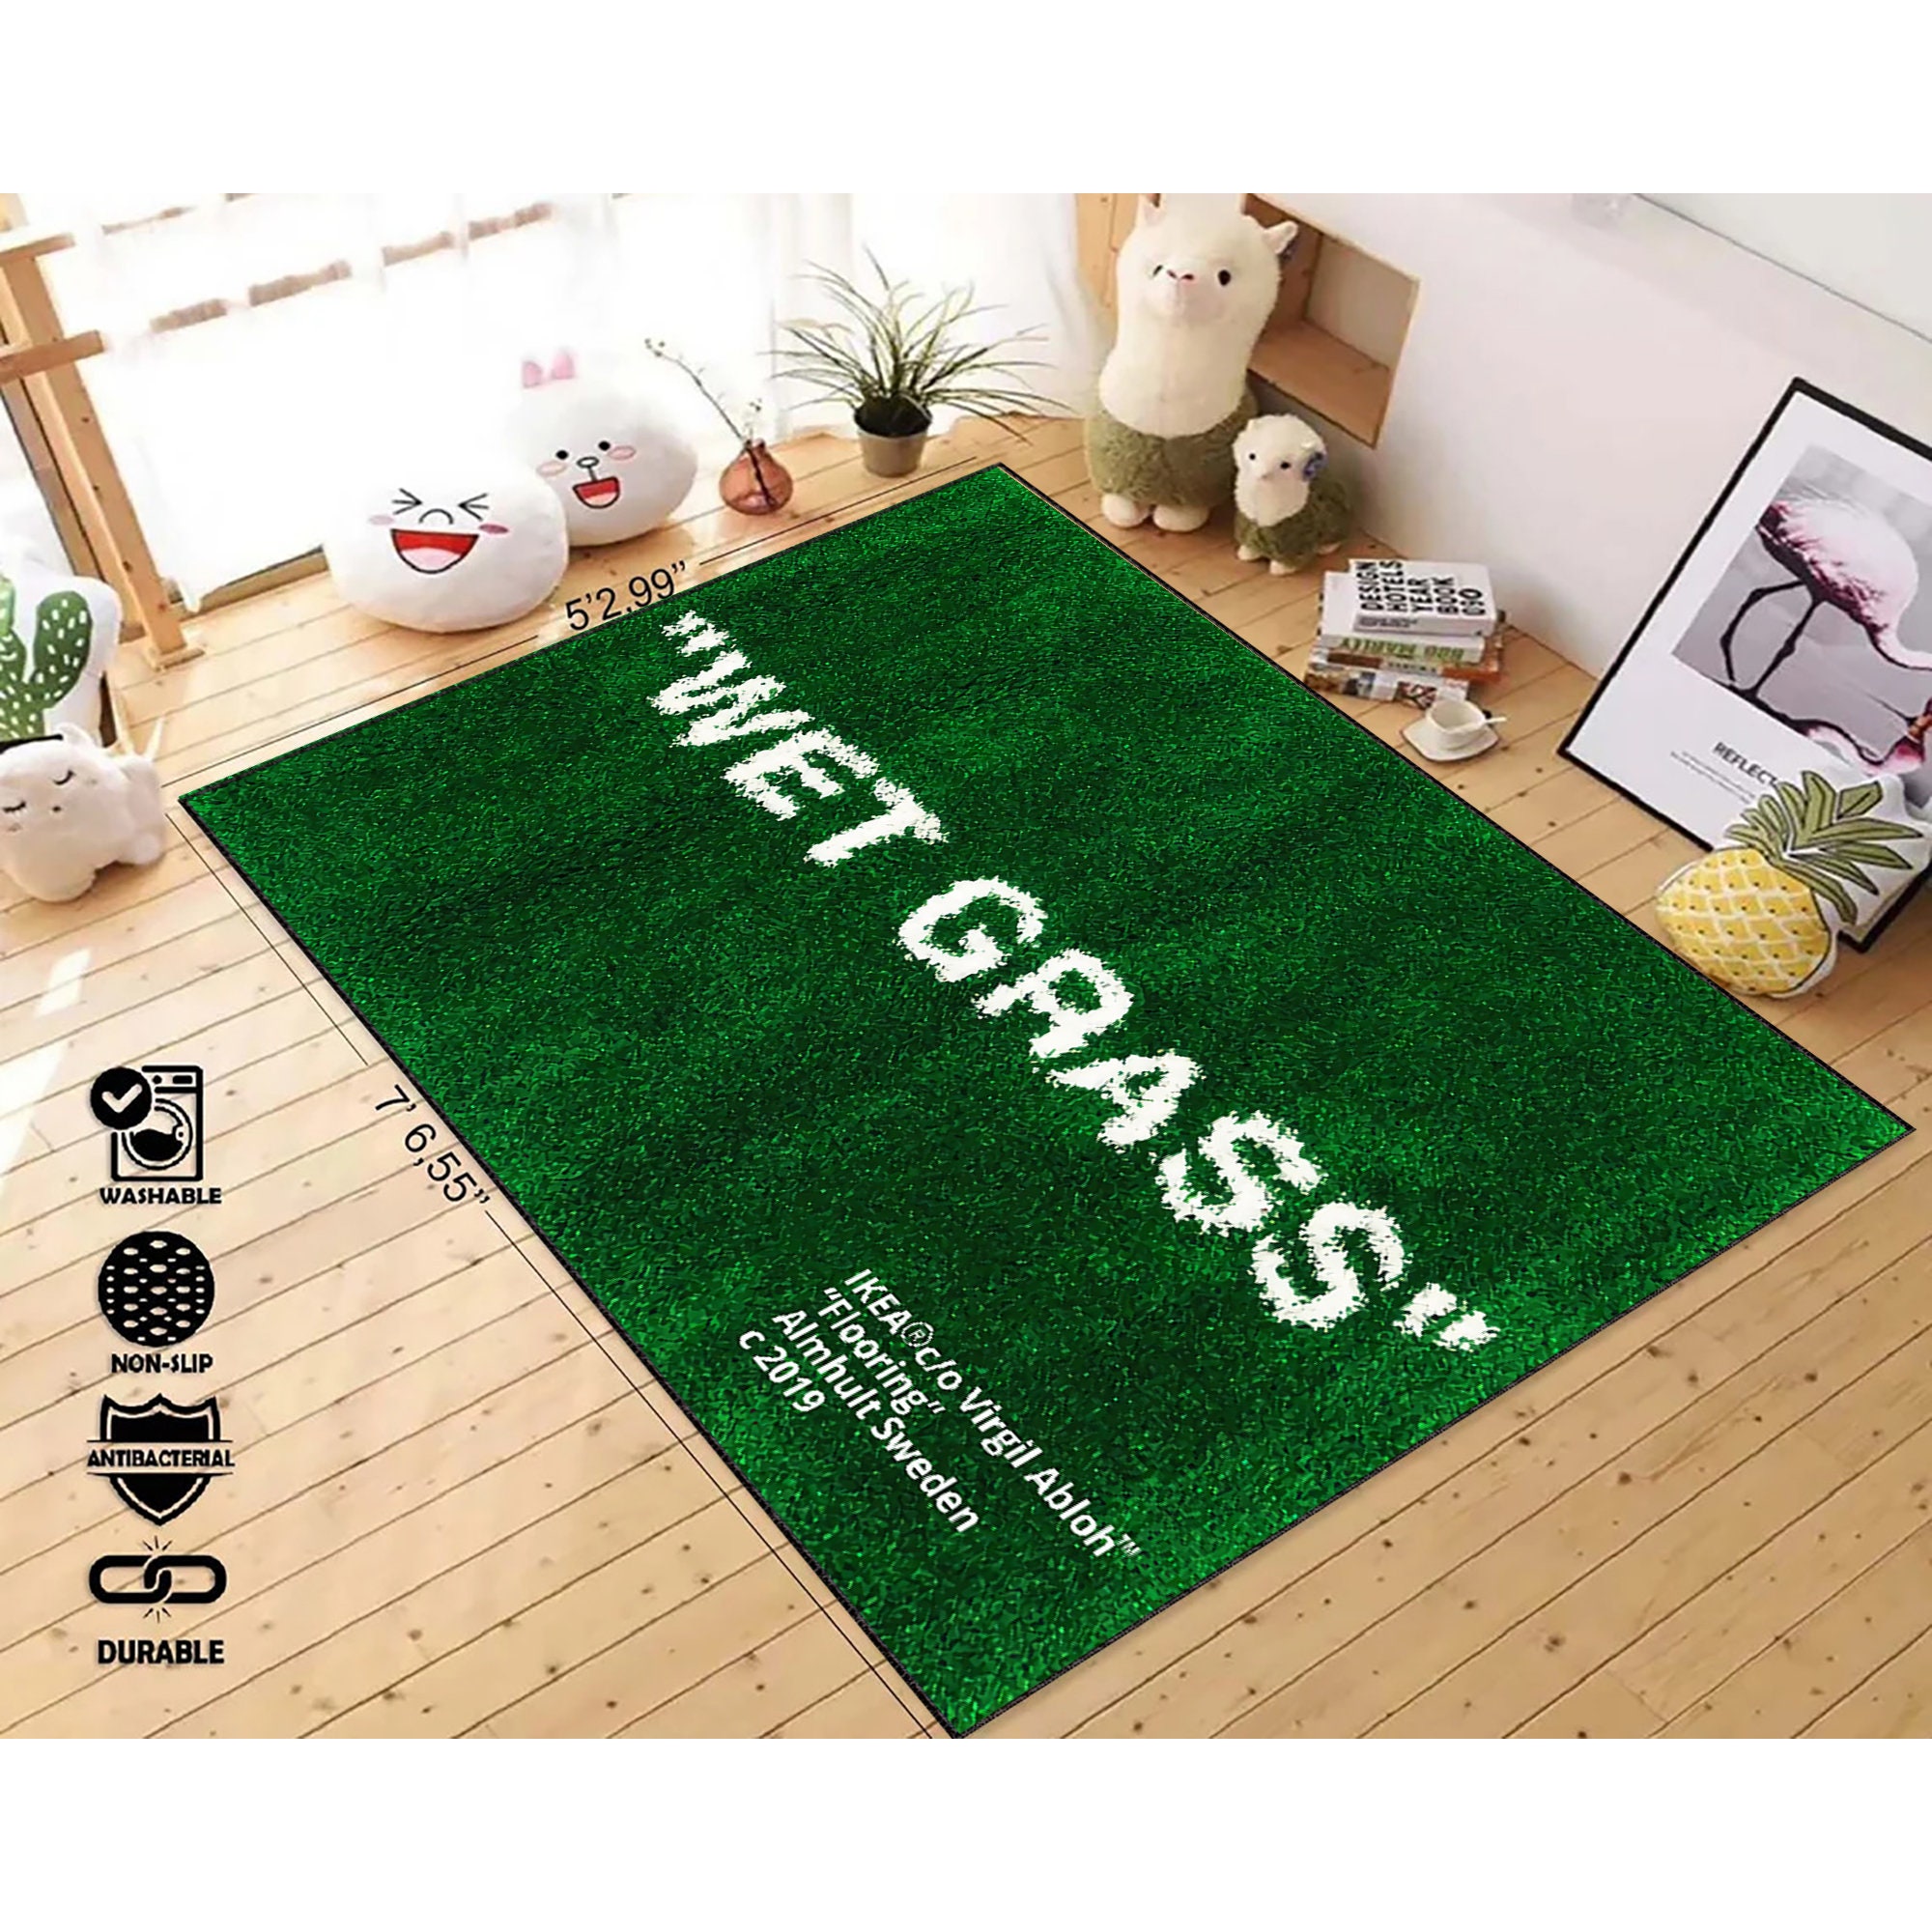 Wet Grass Rugwet-grass Rug Wet Grass Patterned Green Rug 